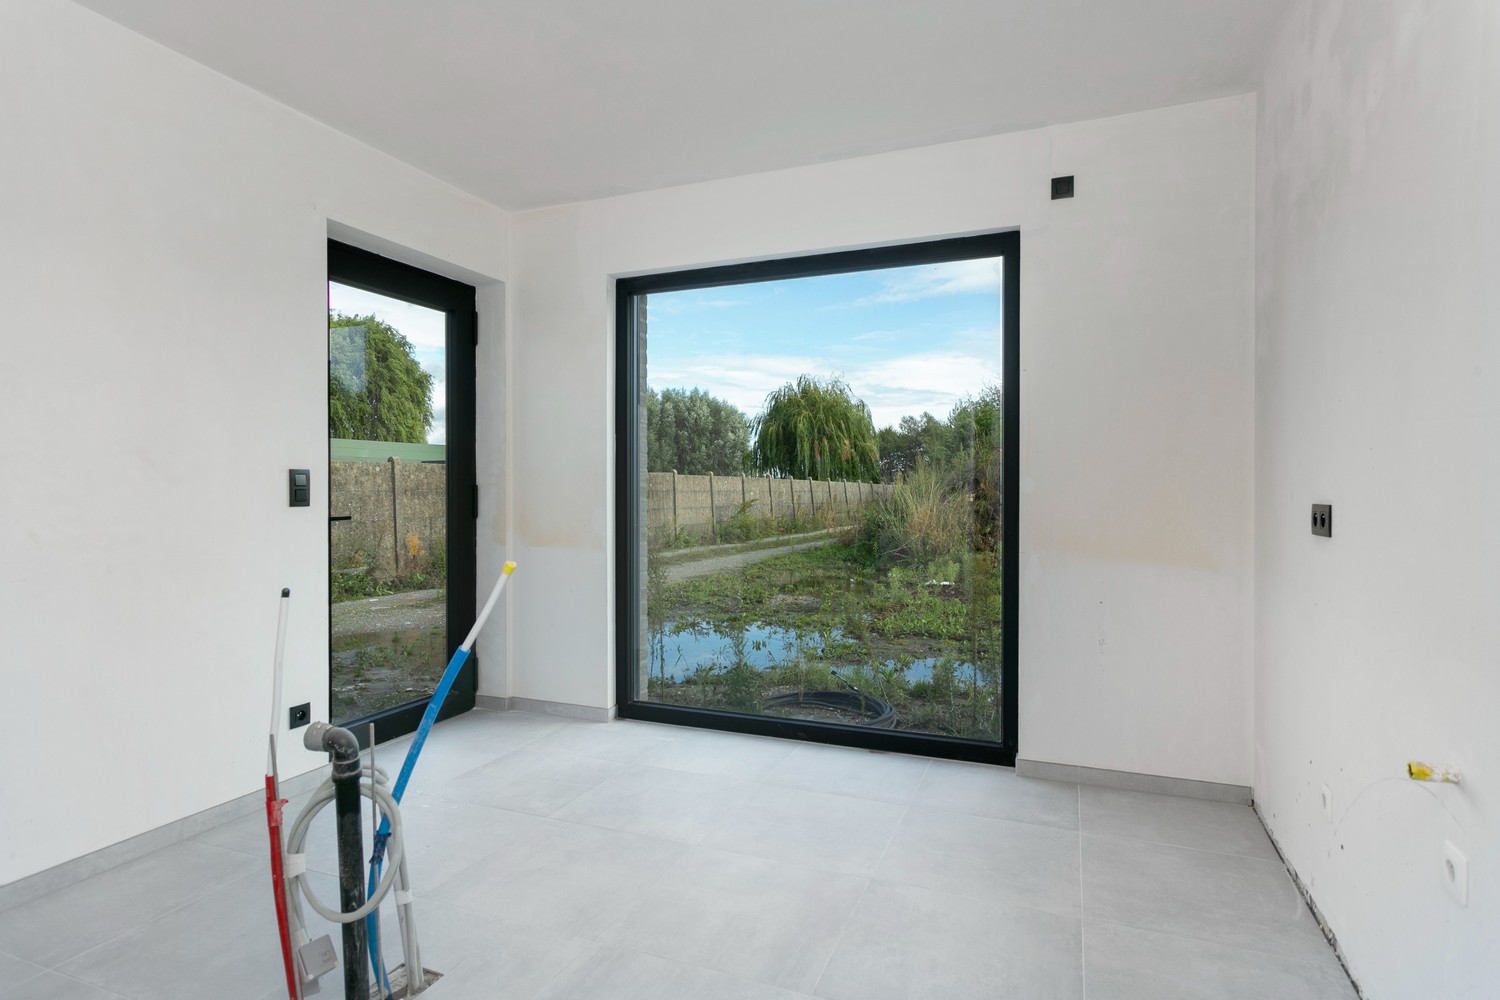 Gloednieuwe, energiezuinige woning met 3 slaapkamers & zonnige tuin in Koningshooikt! afbeelding 6